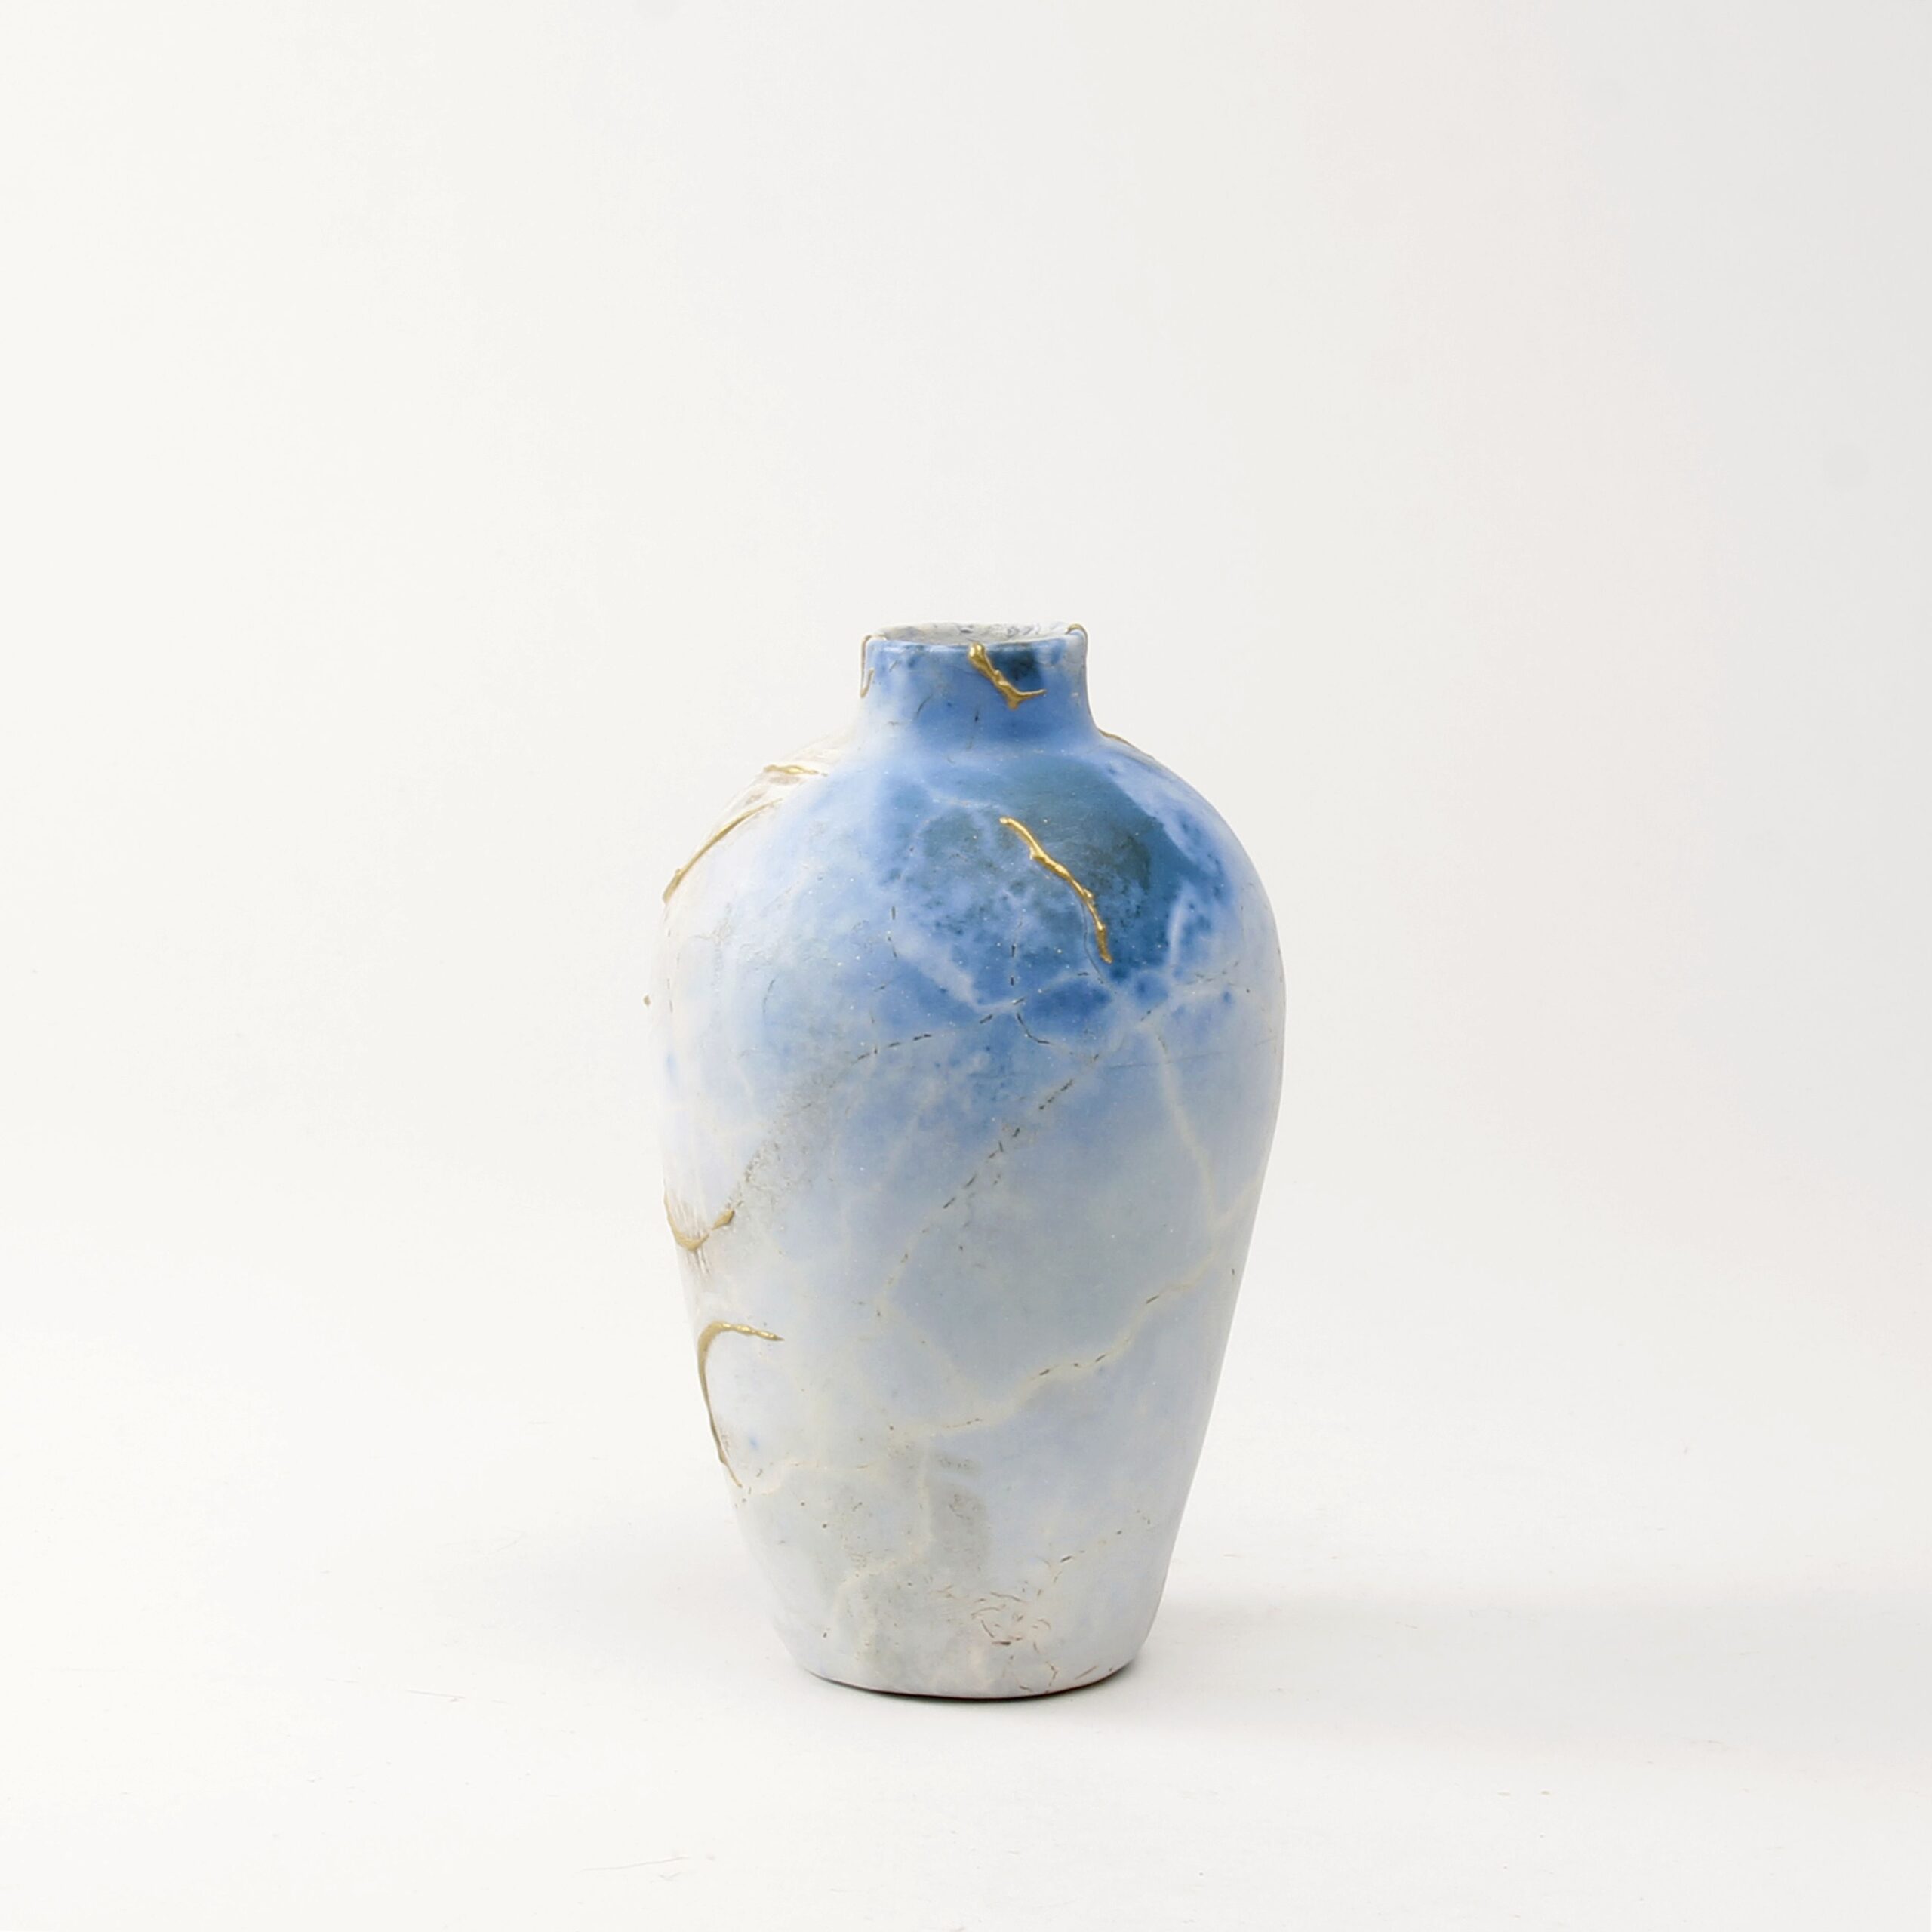 Alison Brannen: Medium Classic Urn Product Image 4 of 6